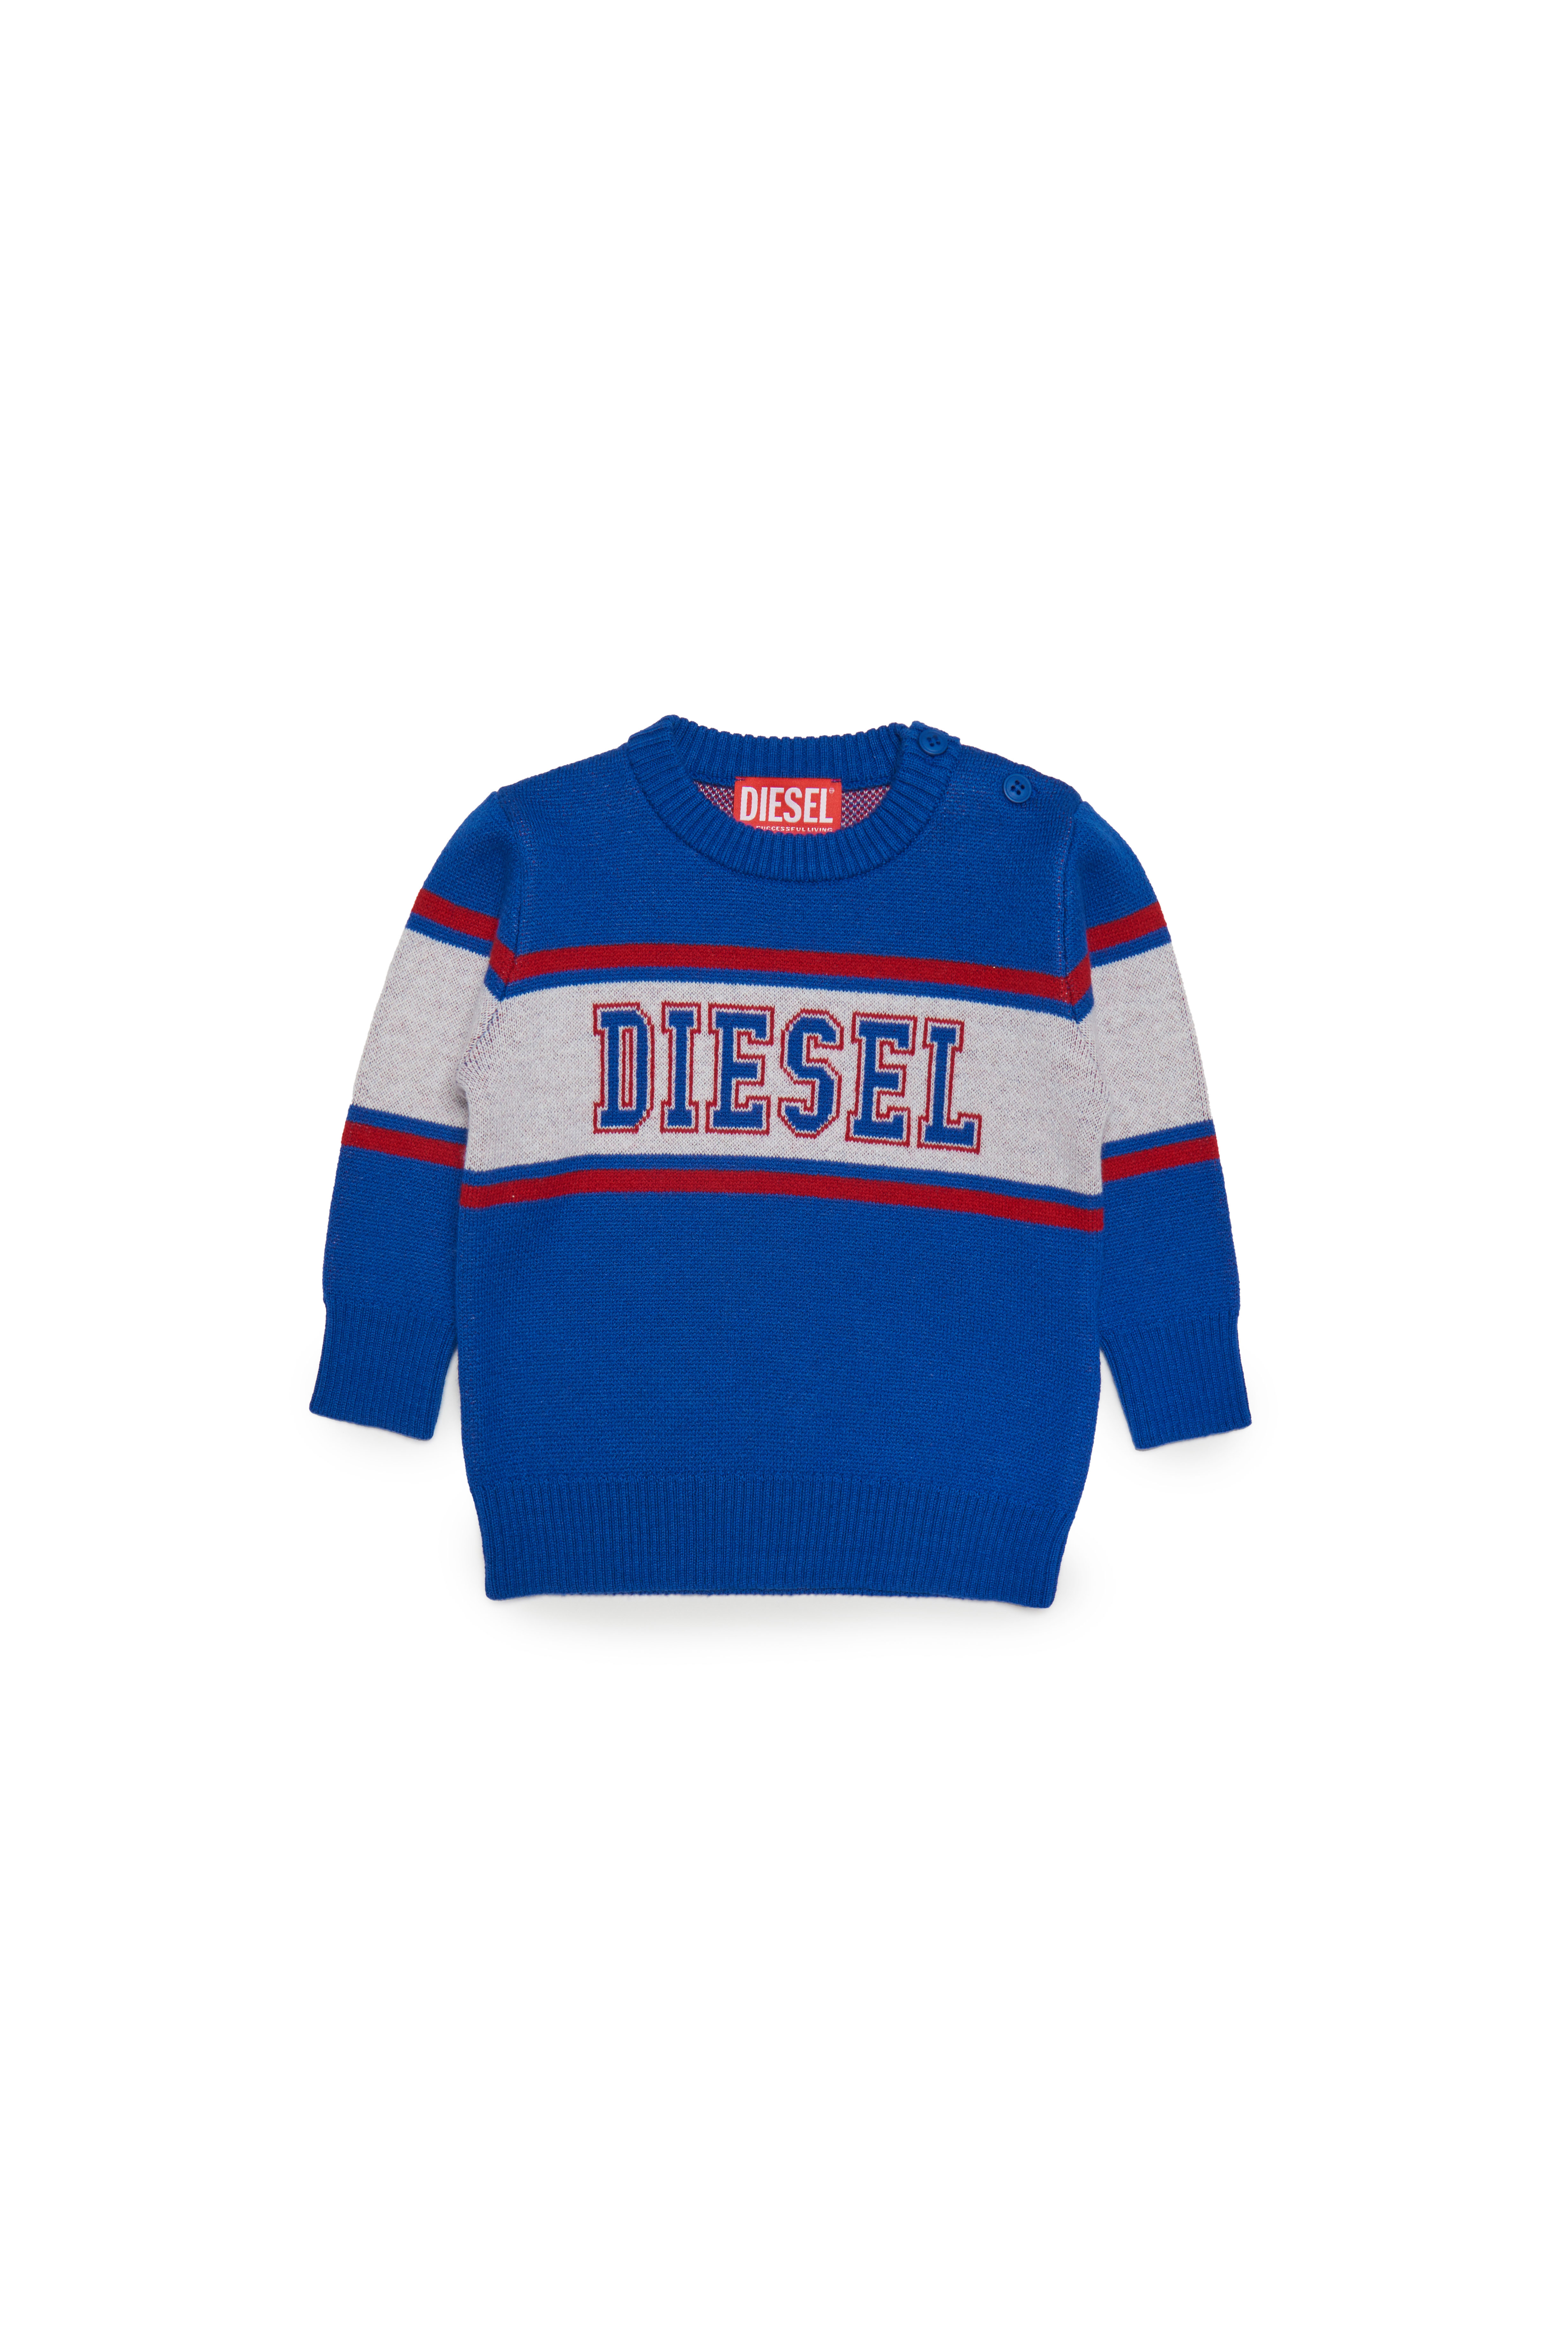 Diesel - Pullover aus Wollmischgewebe mit College-Logo - Strickwaren - Herren - Blau